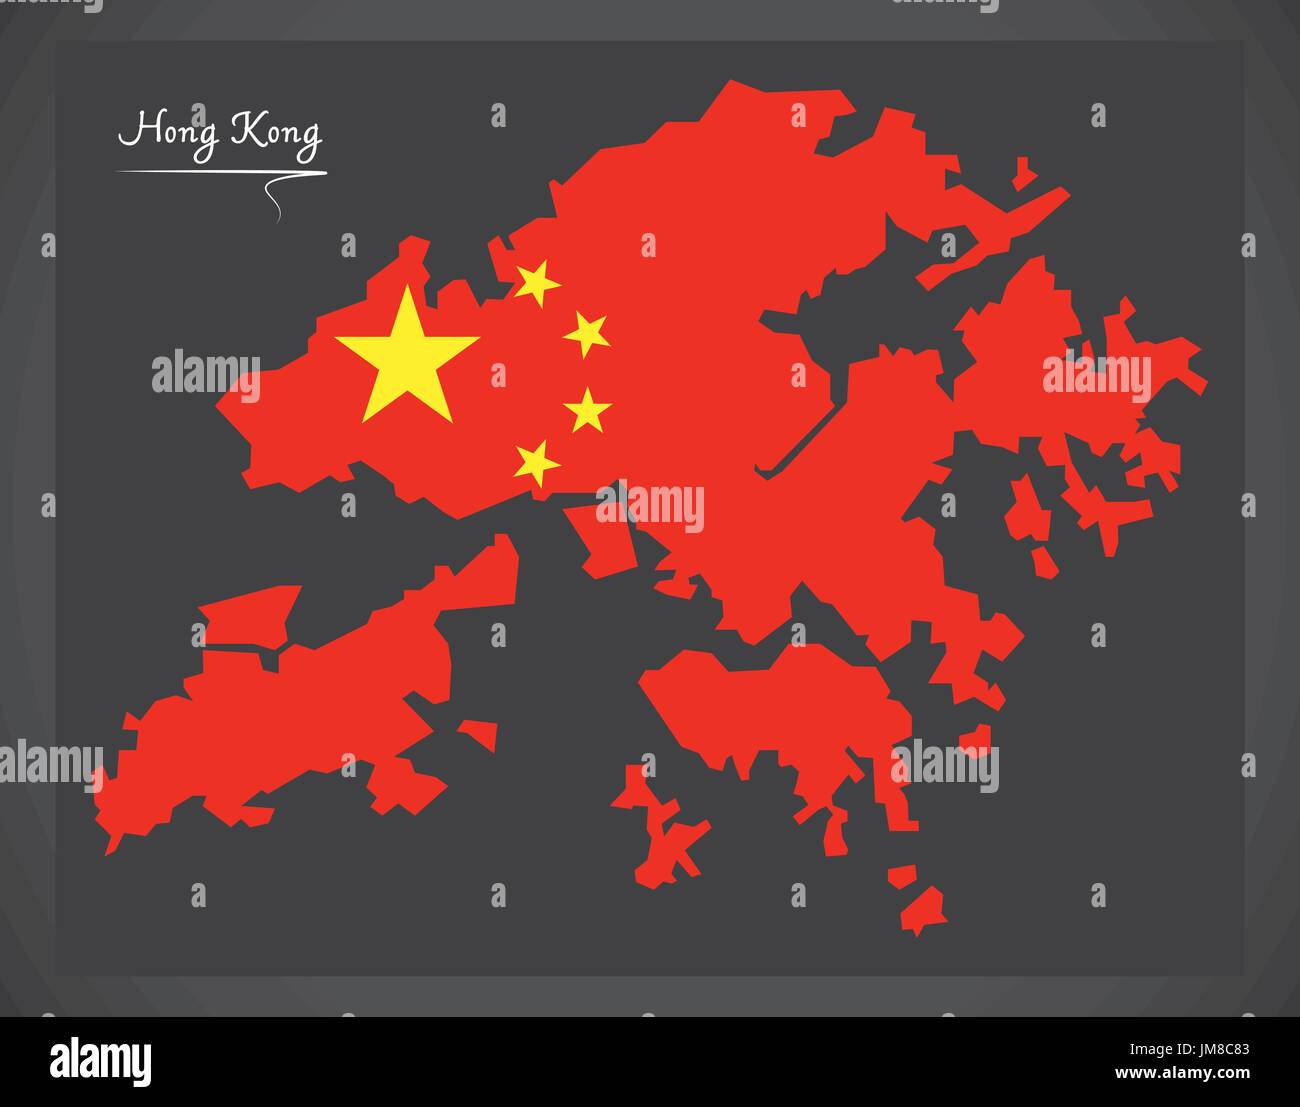 Hong Kong China map with Chinese national flag illustration Stock Vector